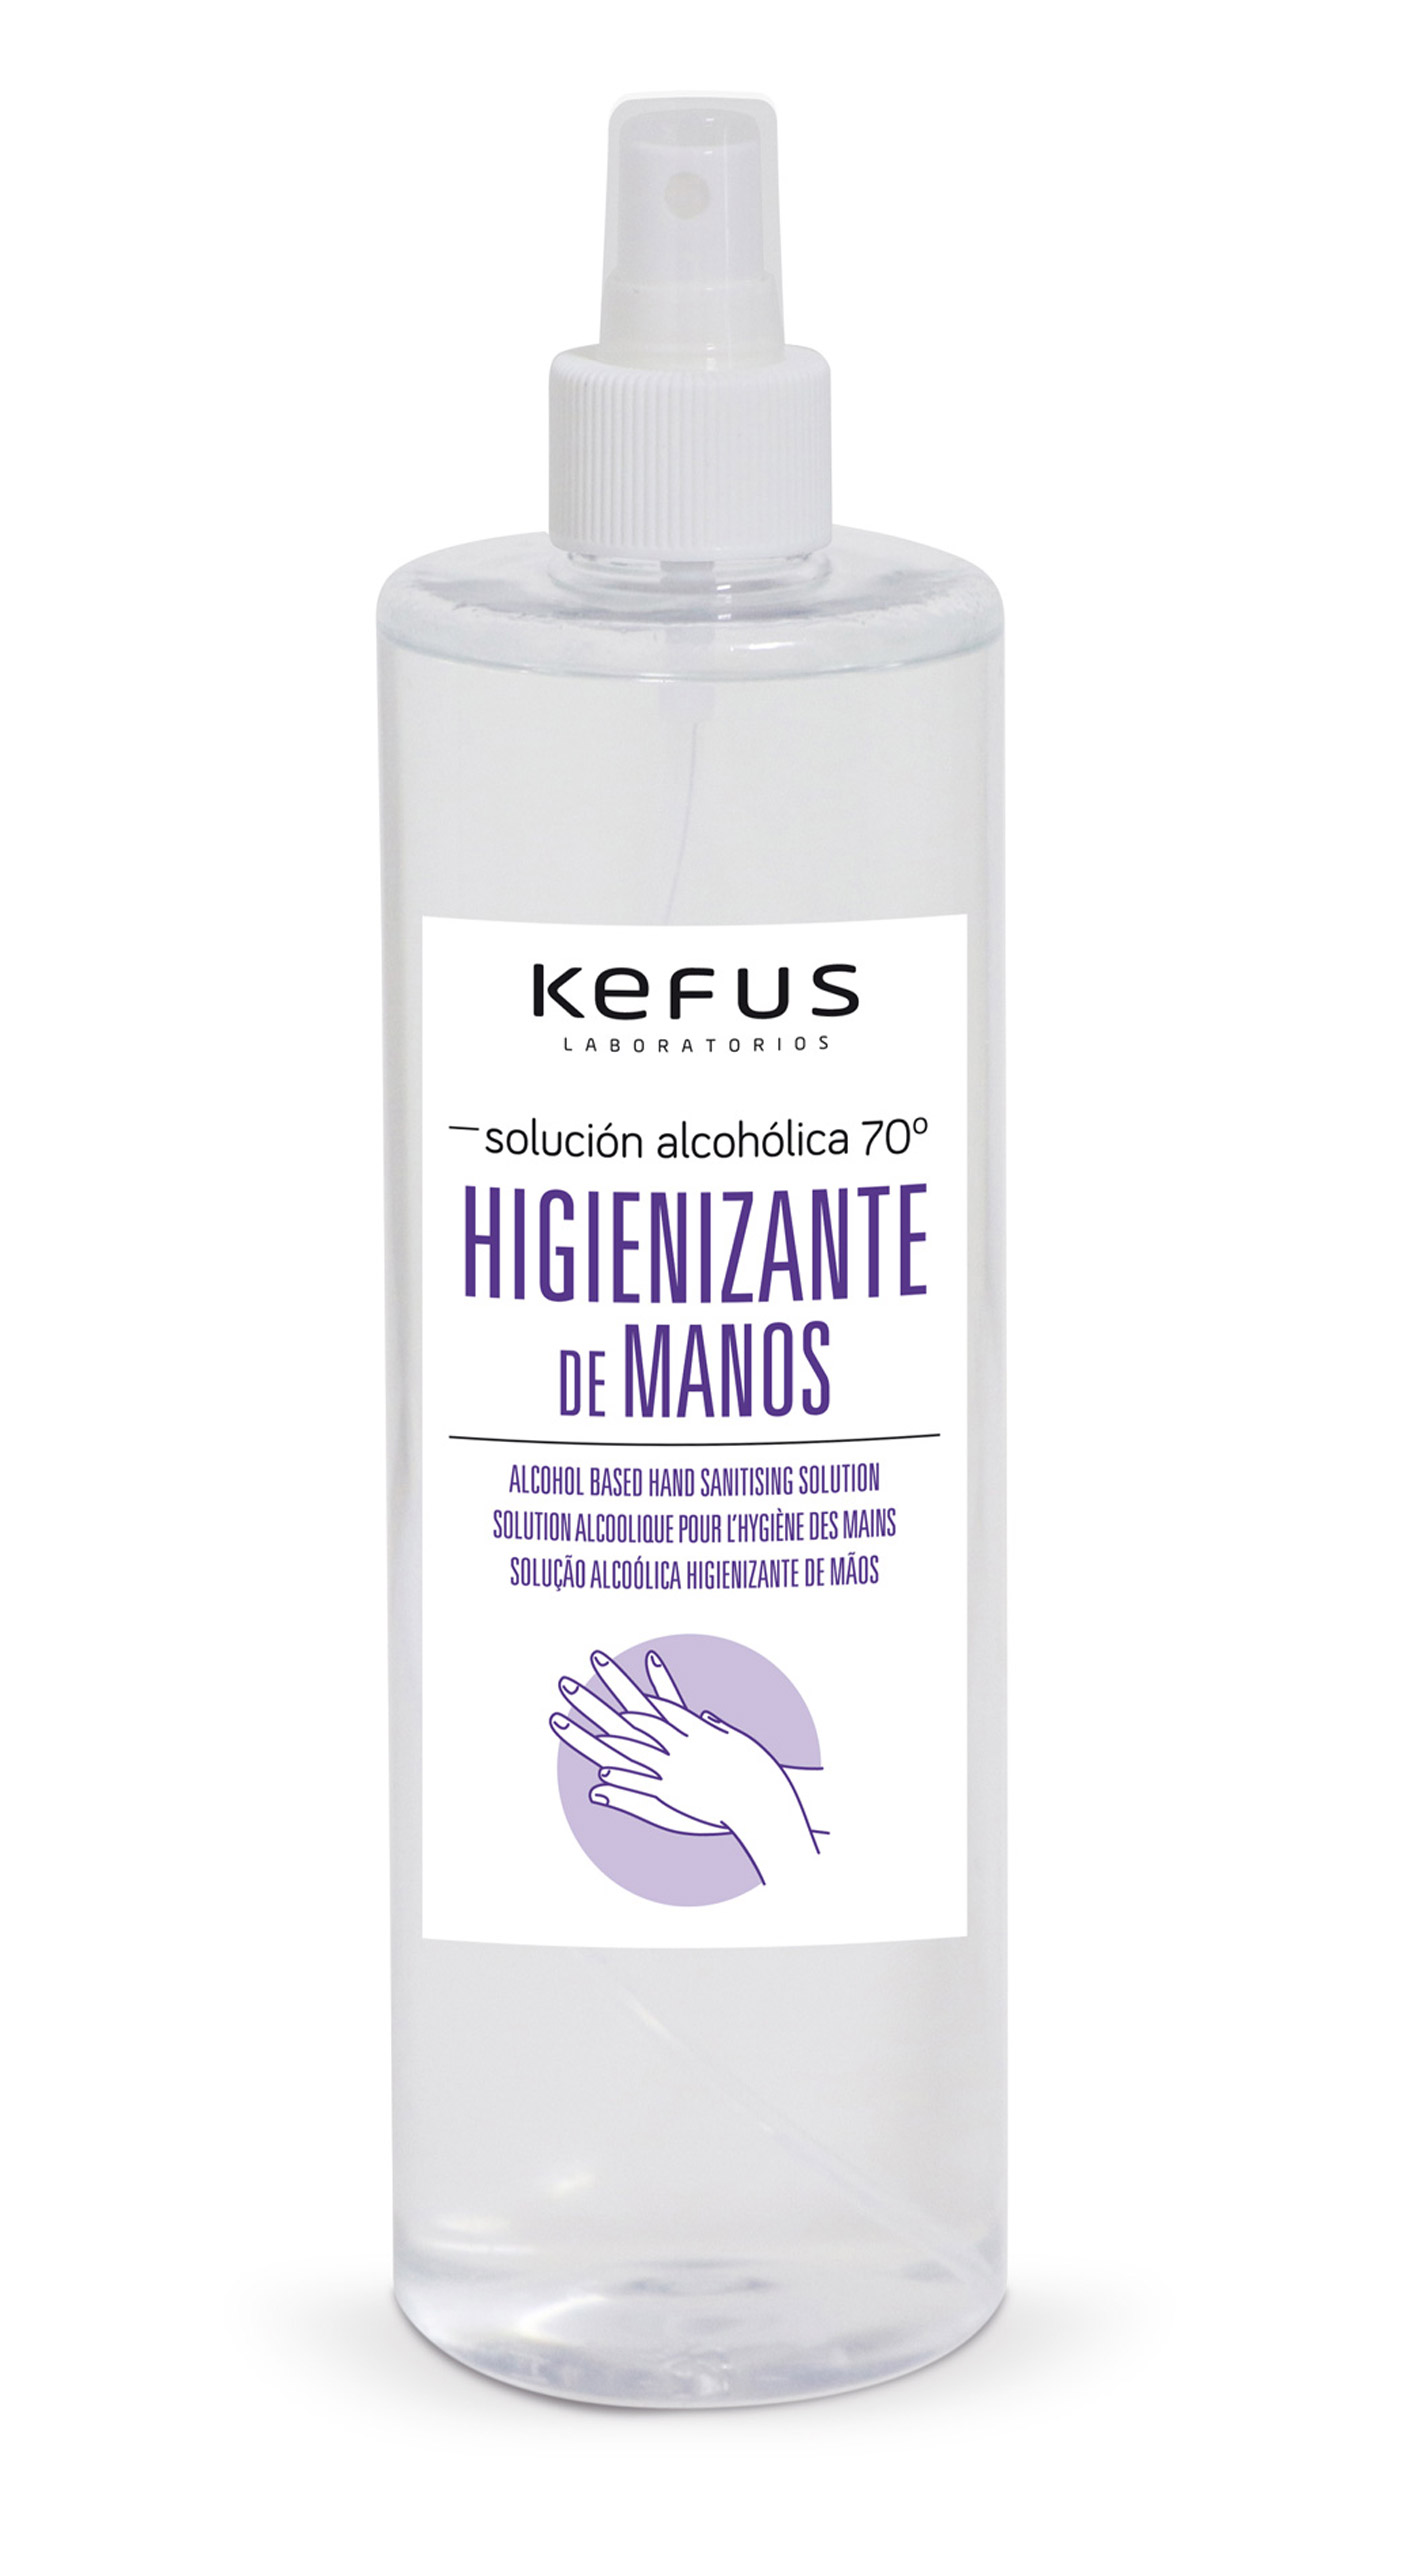 Solución Alcoholica Higienizante de manos spray Kefus 500 ml